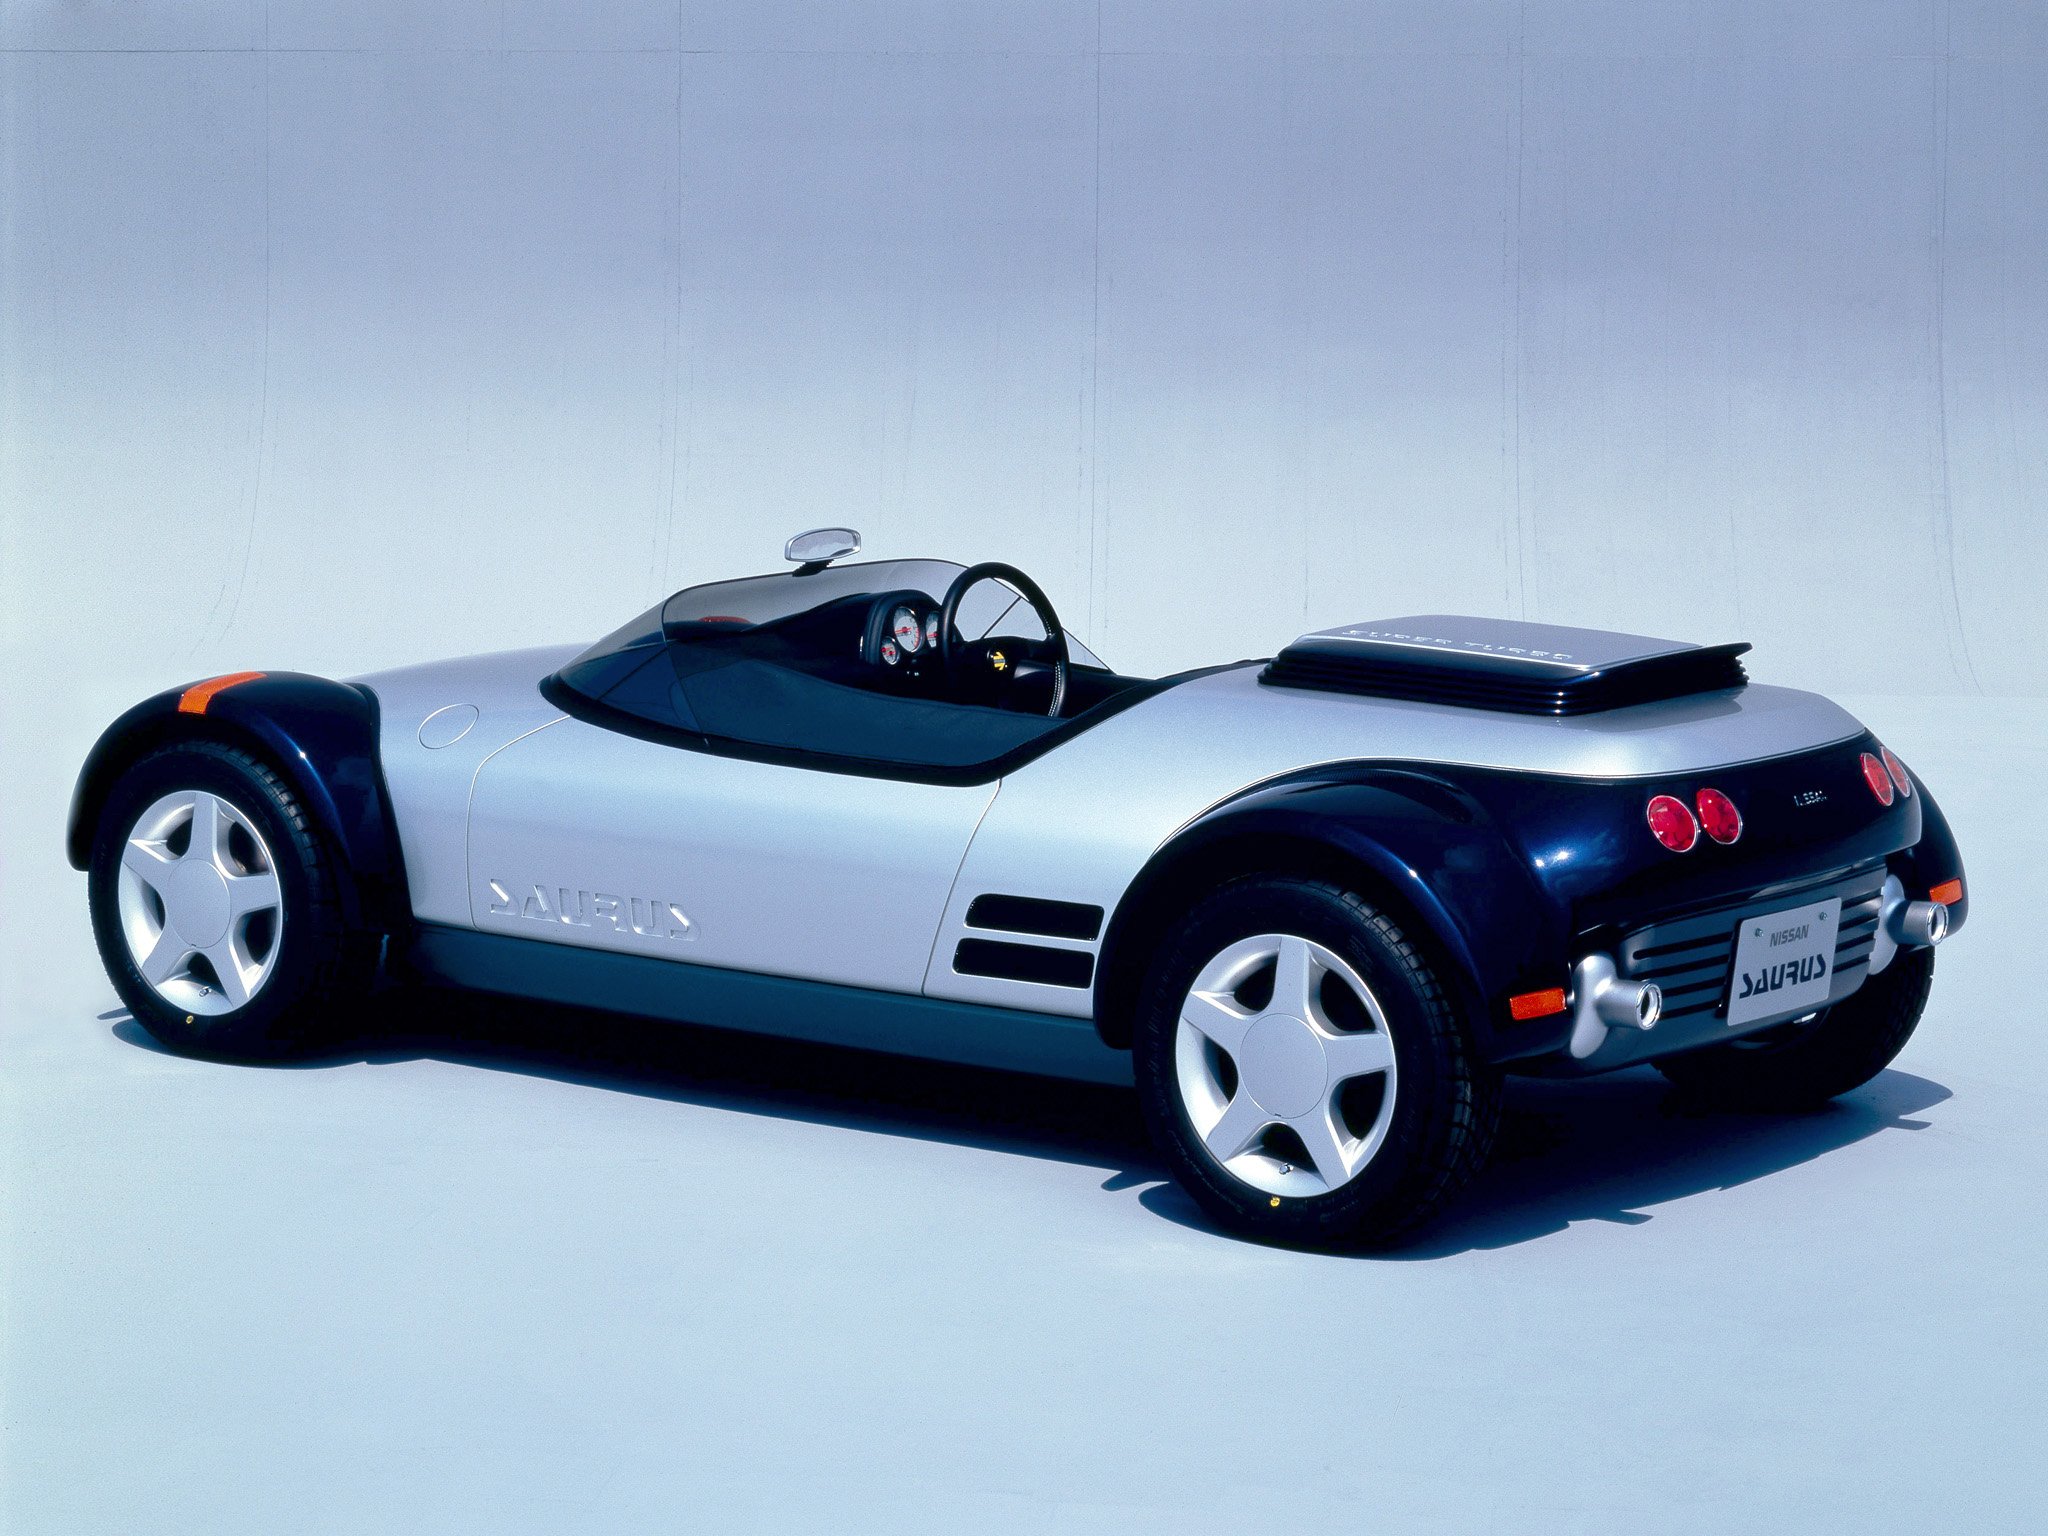 1987, Nissan, Saurus, Concept, Supercar Wallpaper